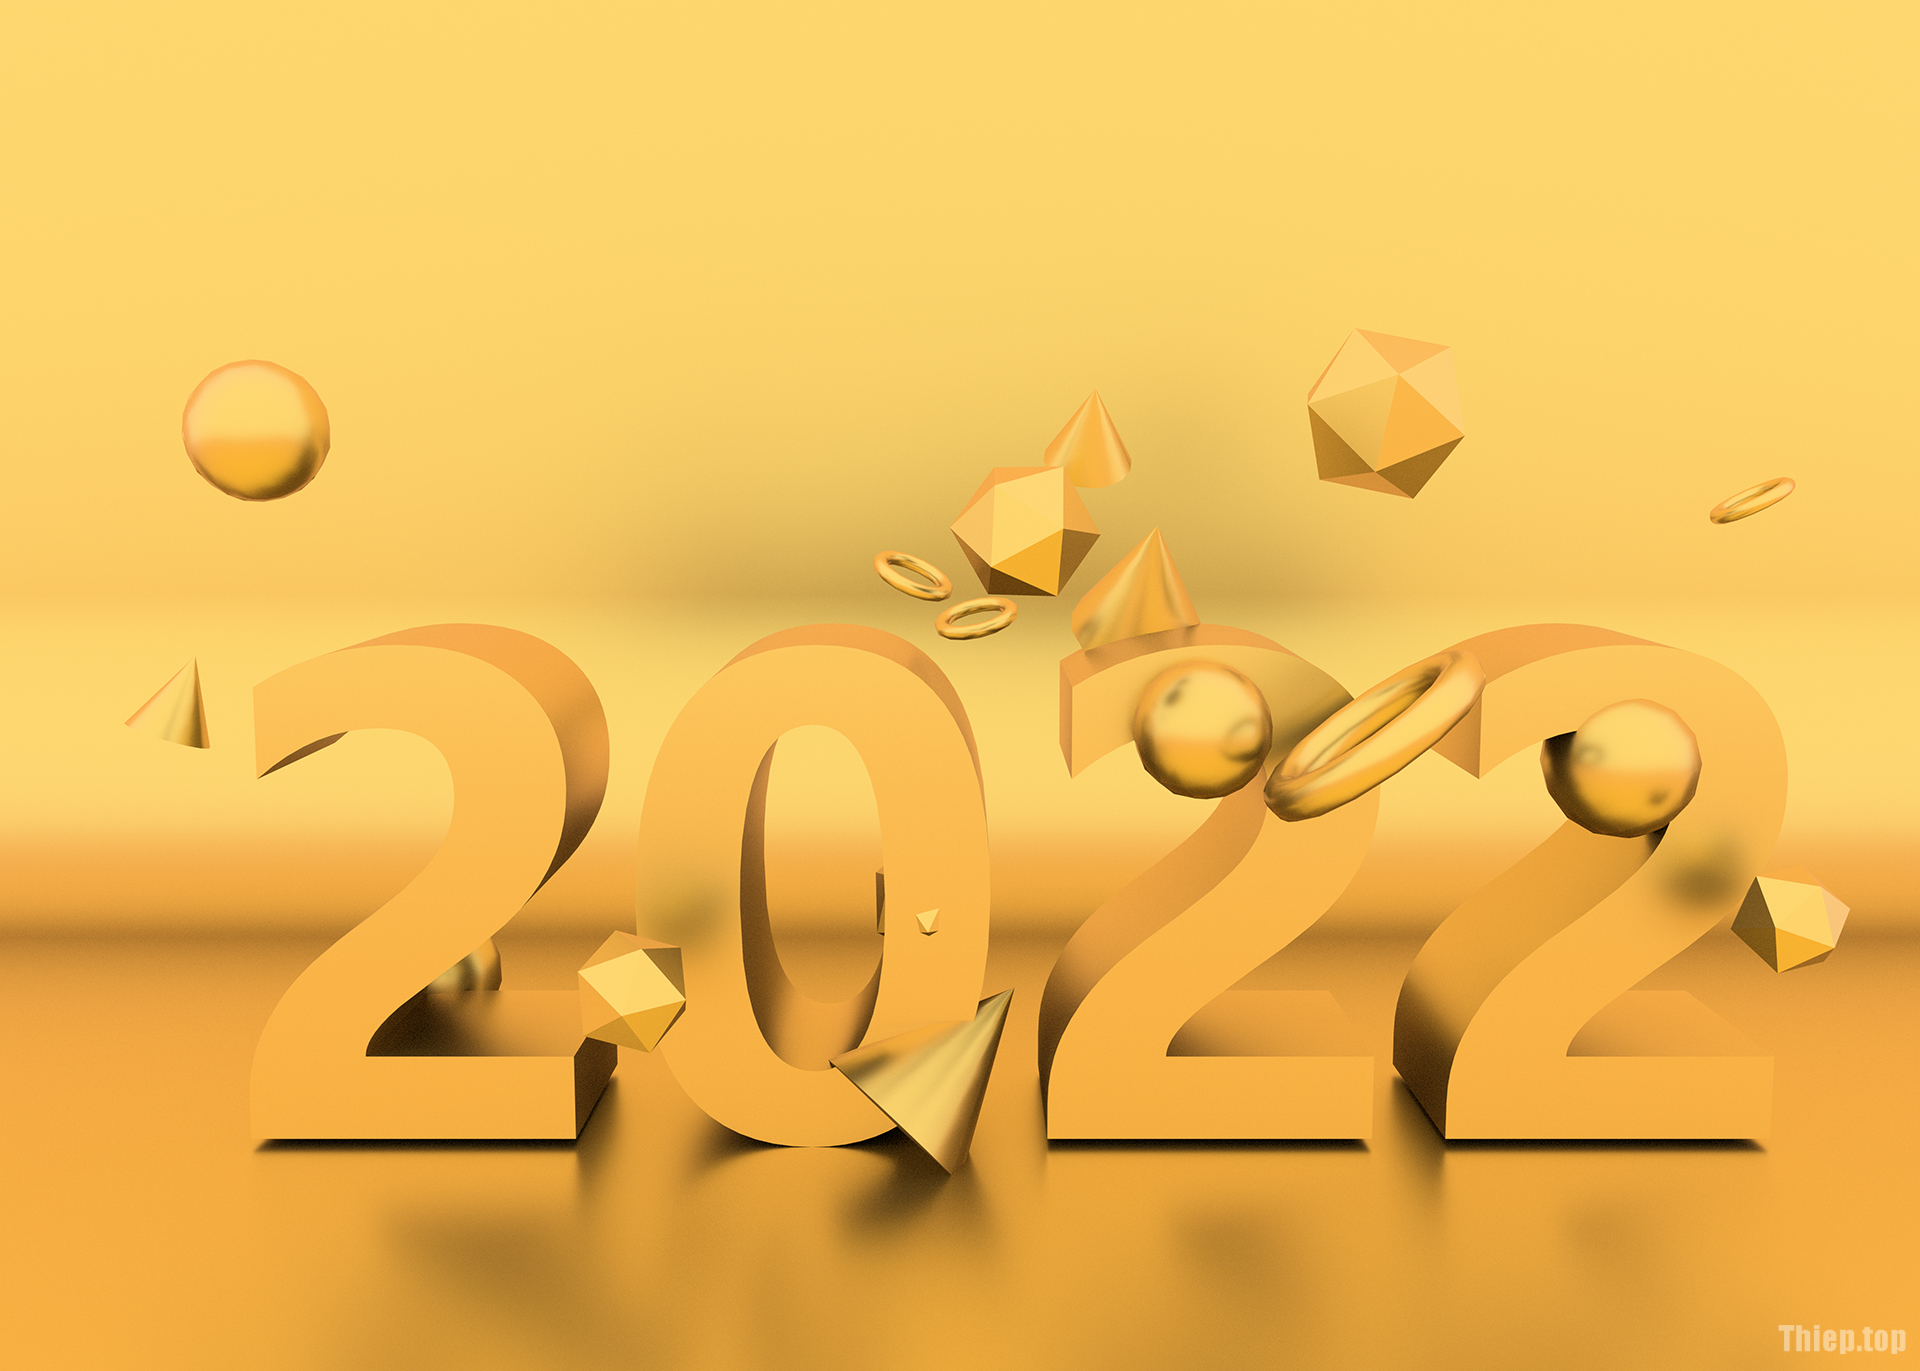 Top Hình nền chúc mừng năm mới 2022 Full HD Tải miễn phí - Hình 1